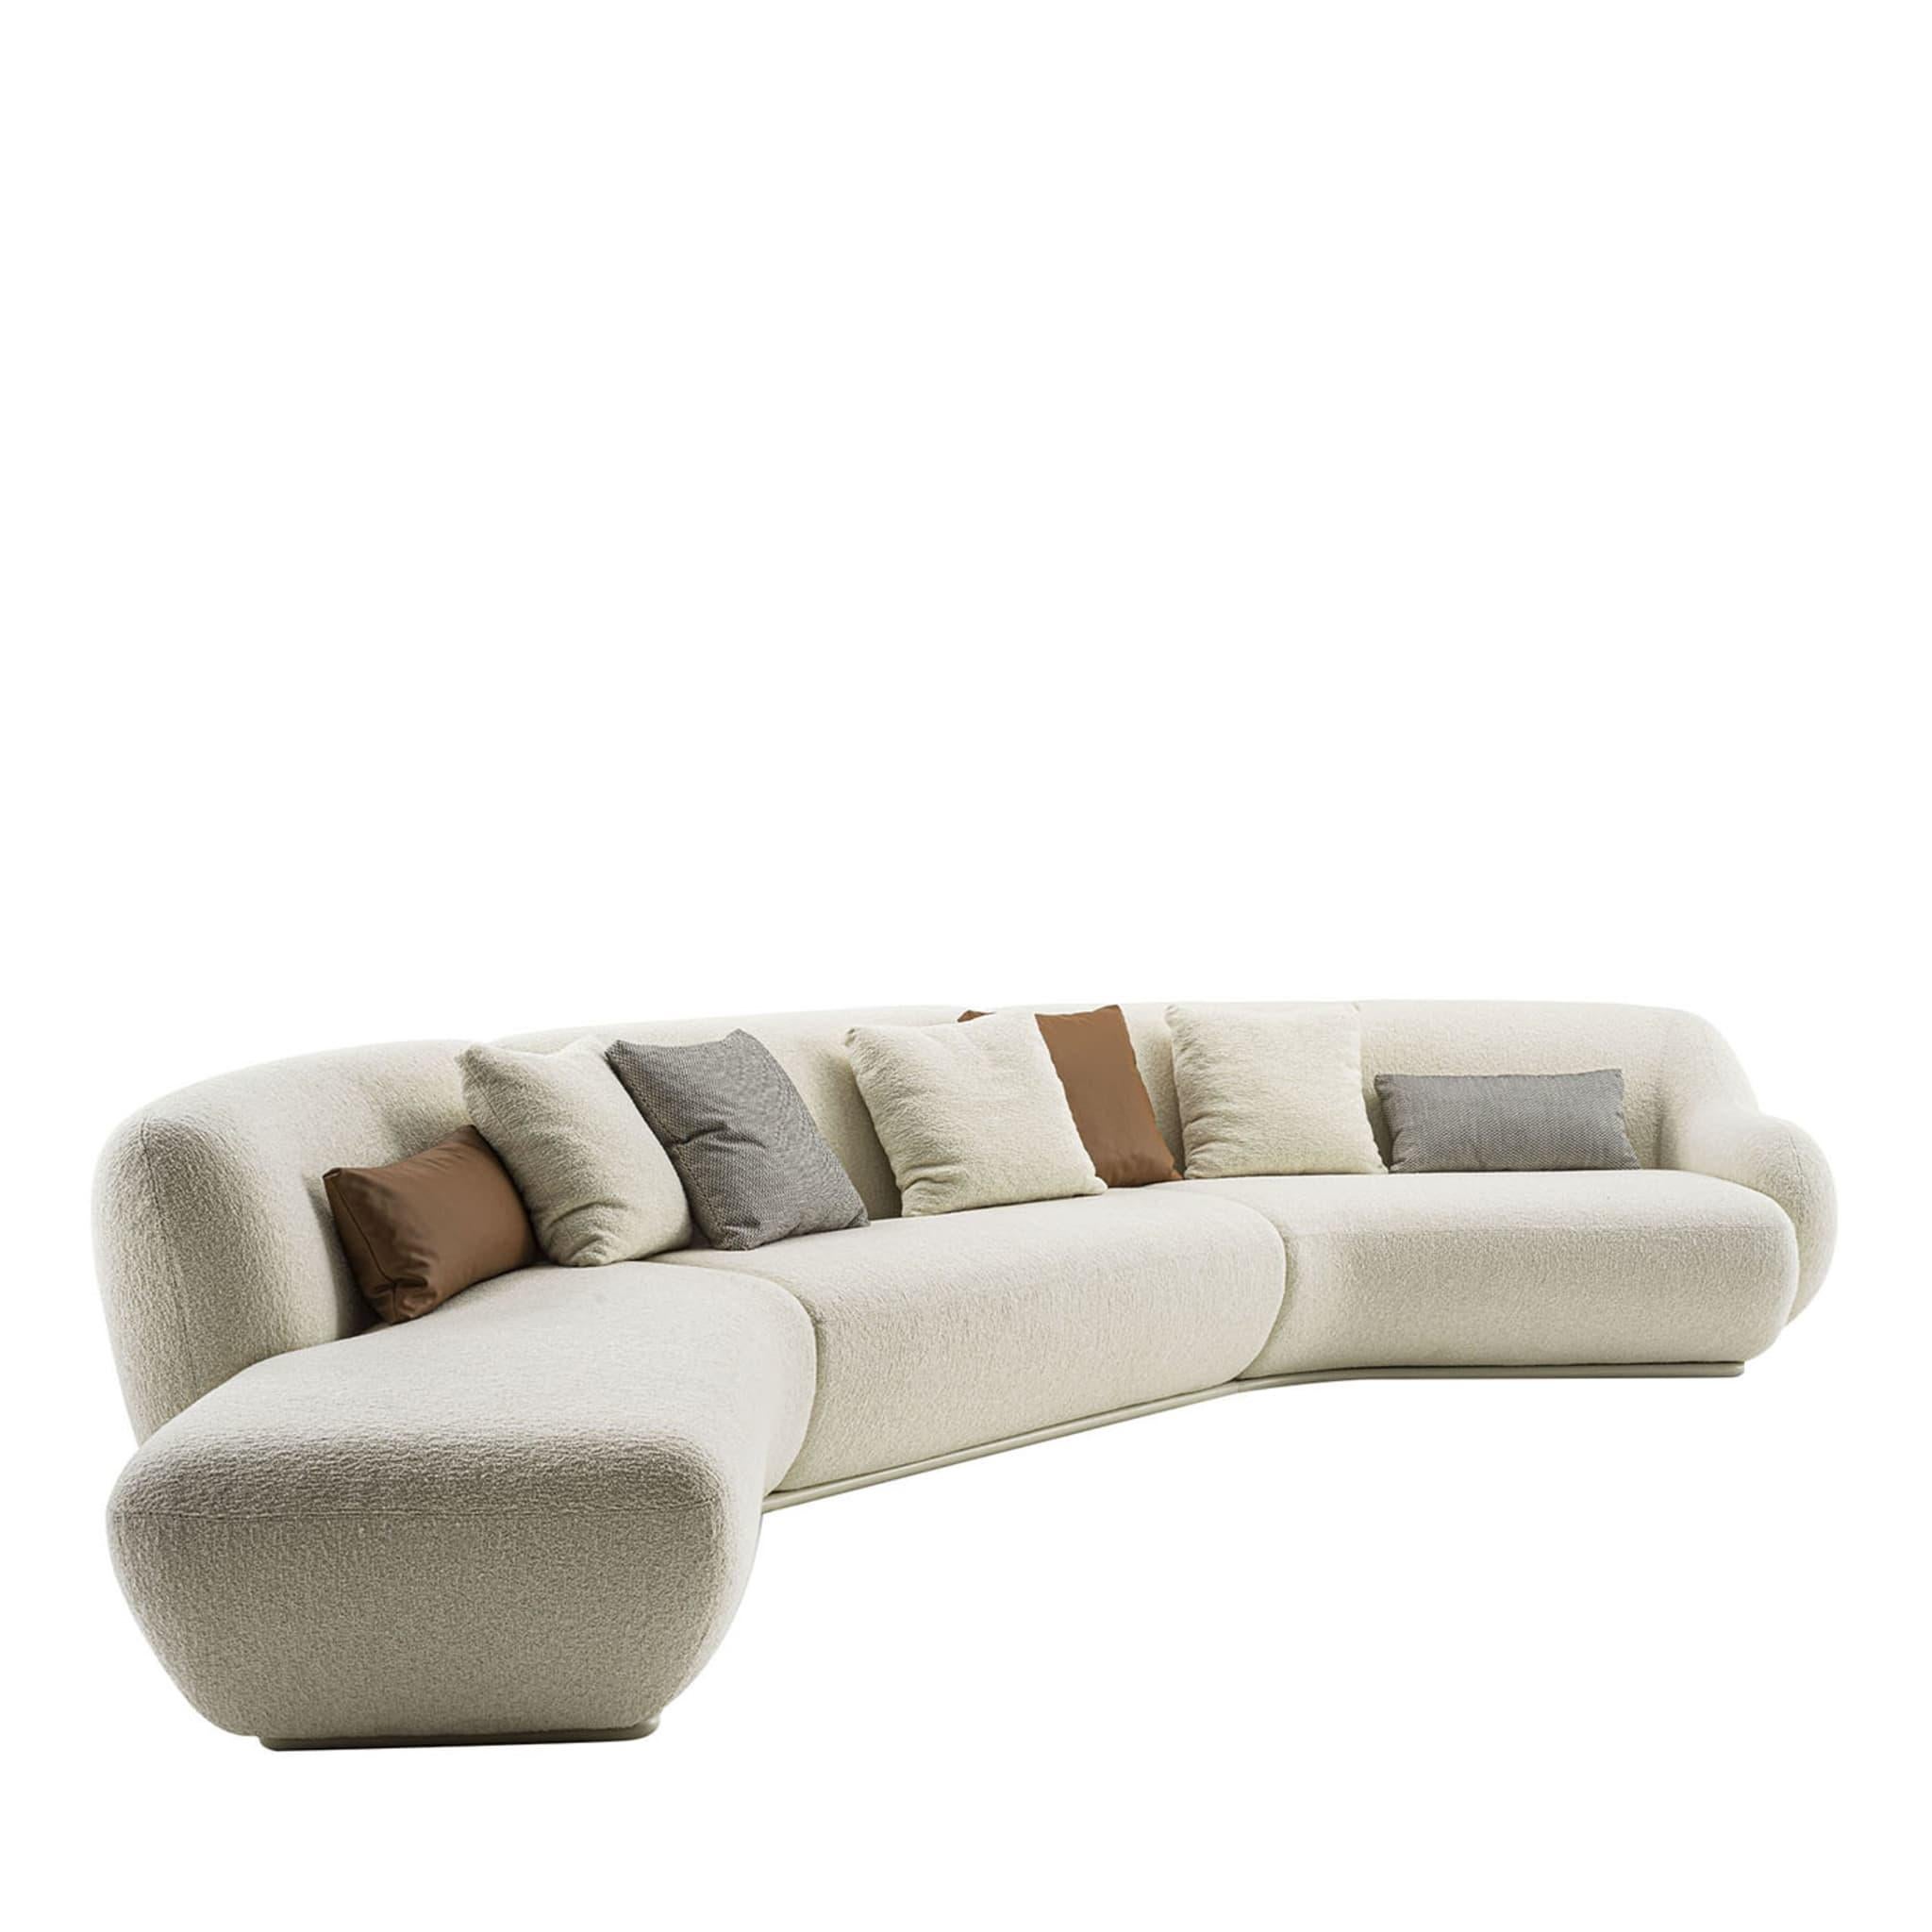 Textile Nuvola White Modular Sofa For Sale